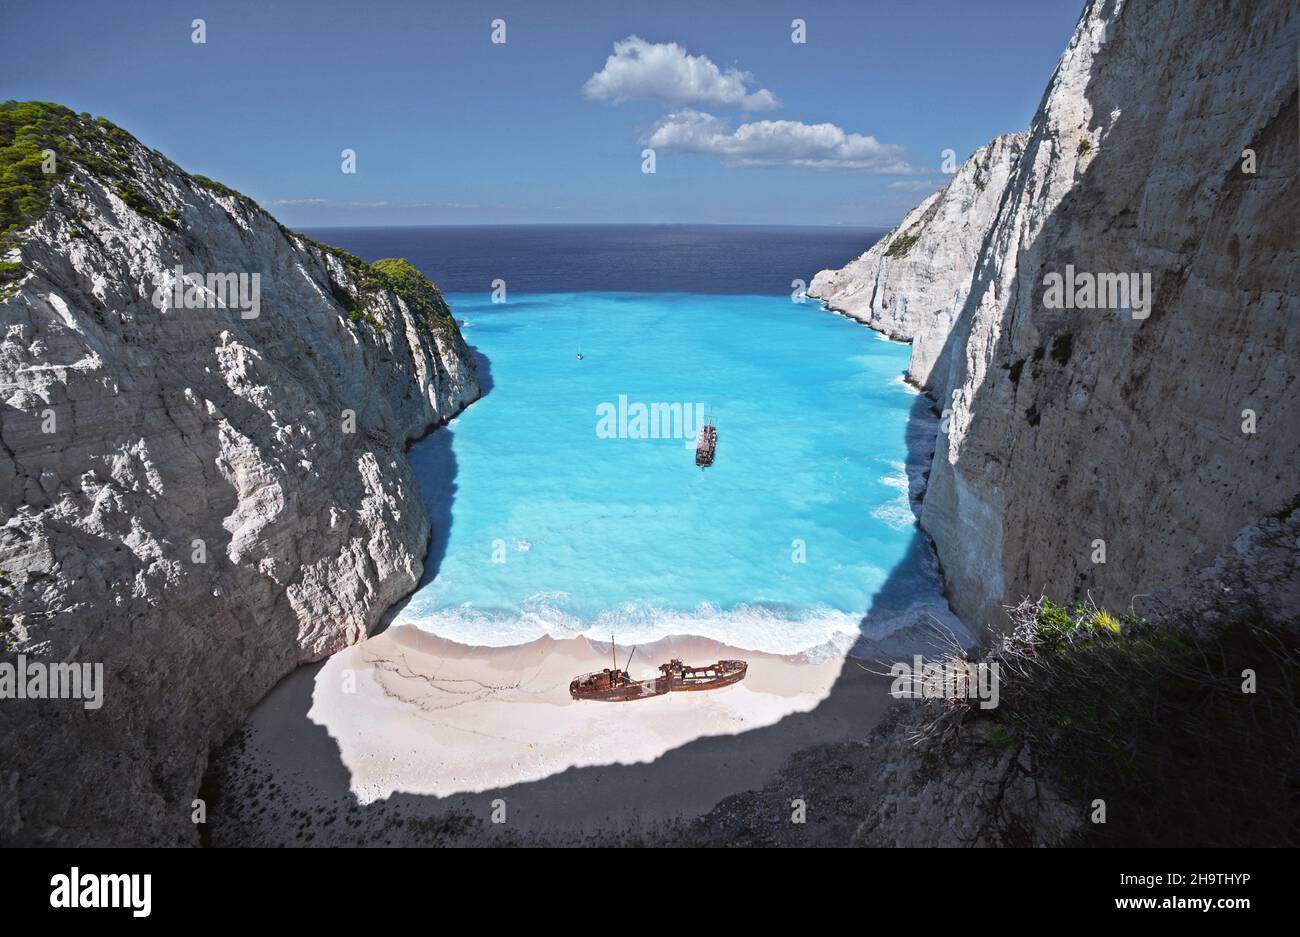 Famosa bahía de Navagio con naufragio, Grecia, Islas Jónicas, Zakynthos Foto de stock